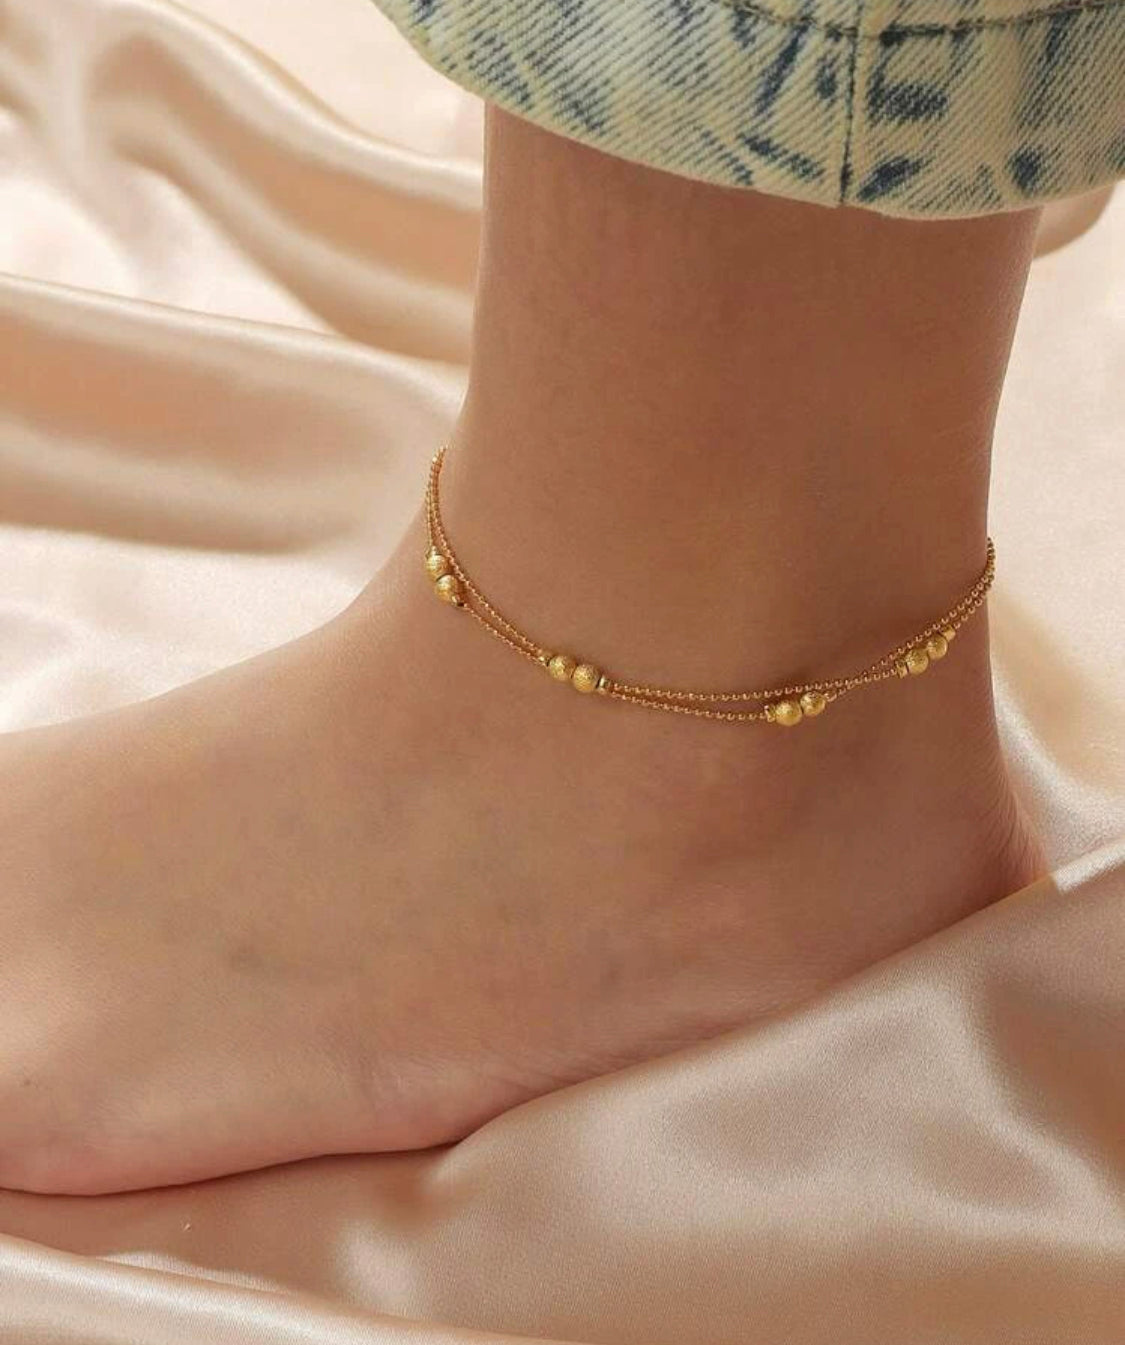 Beautiful designer anklets